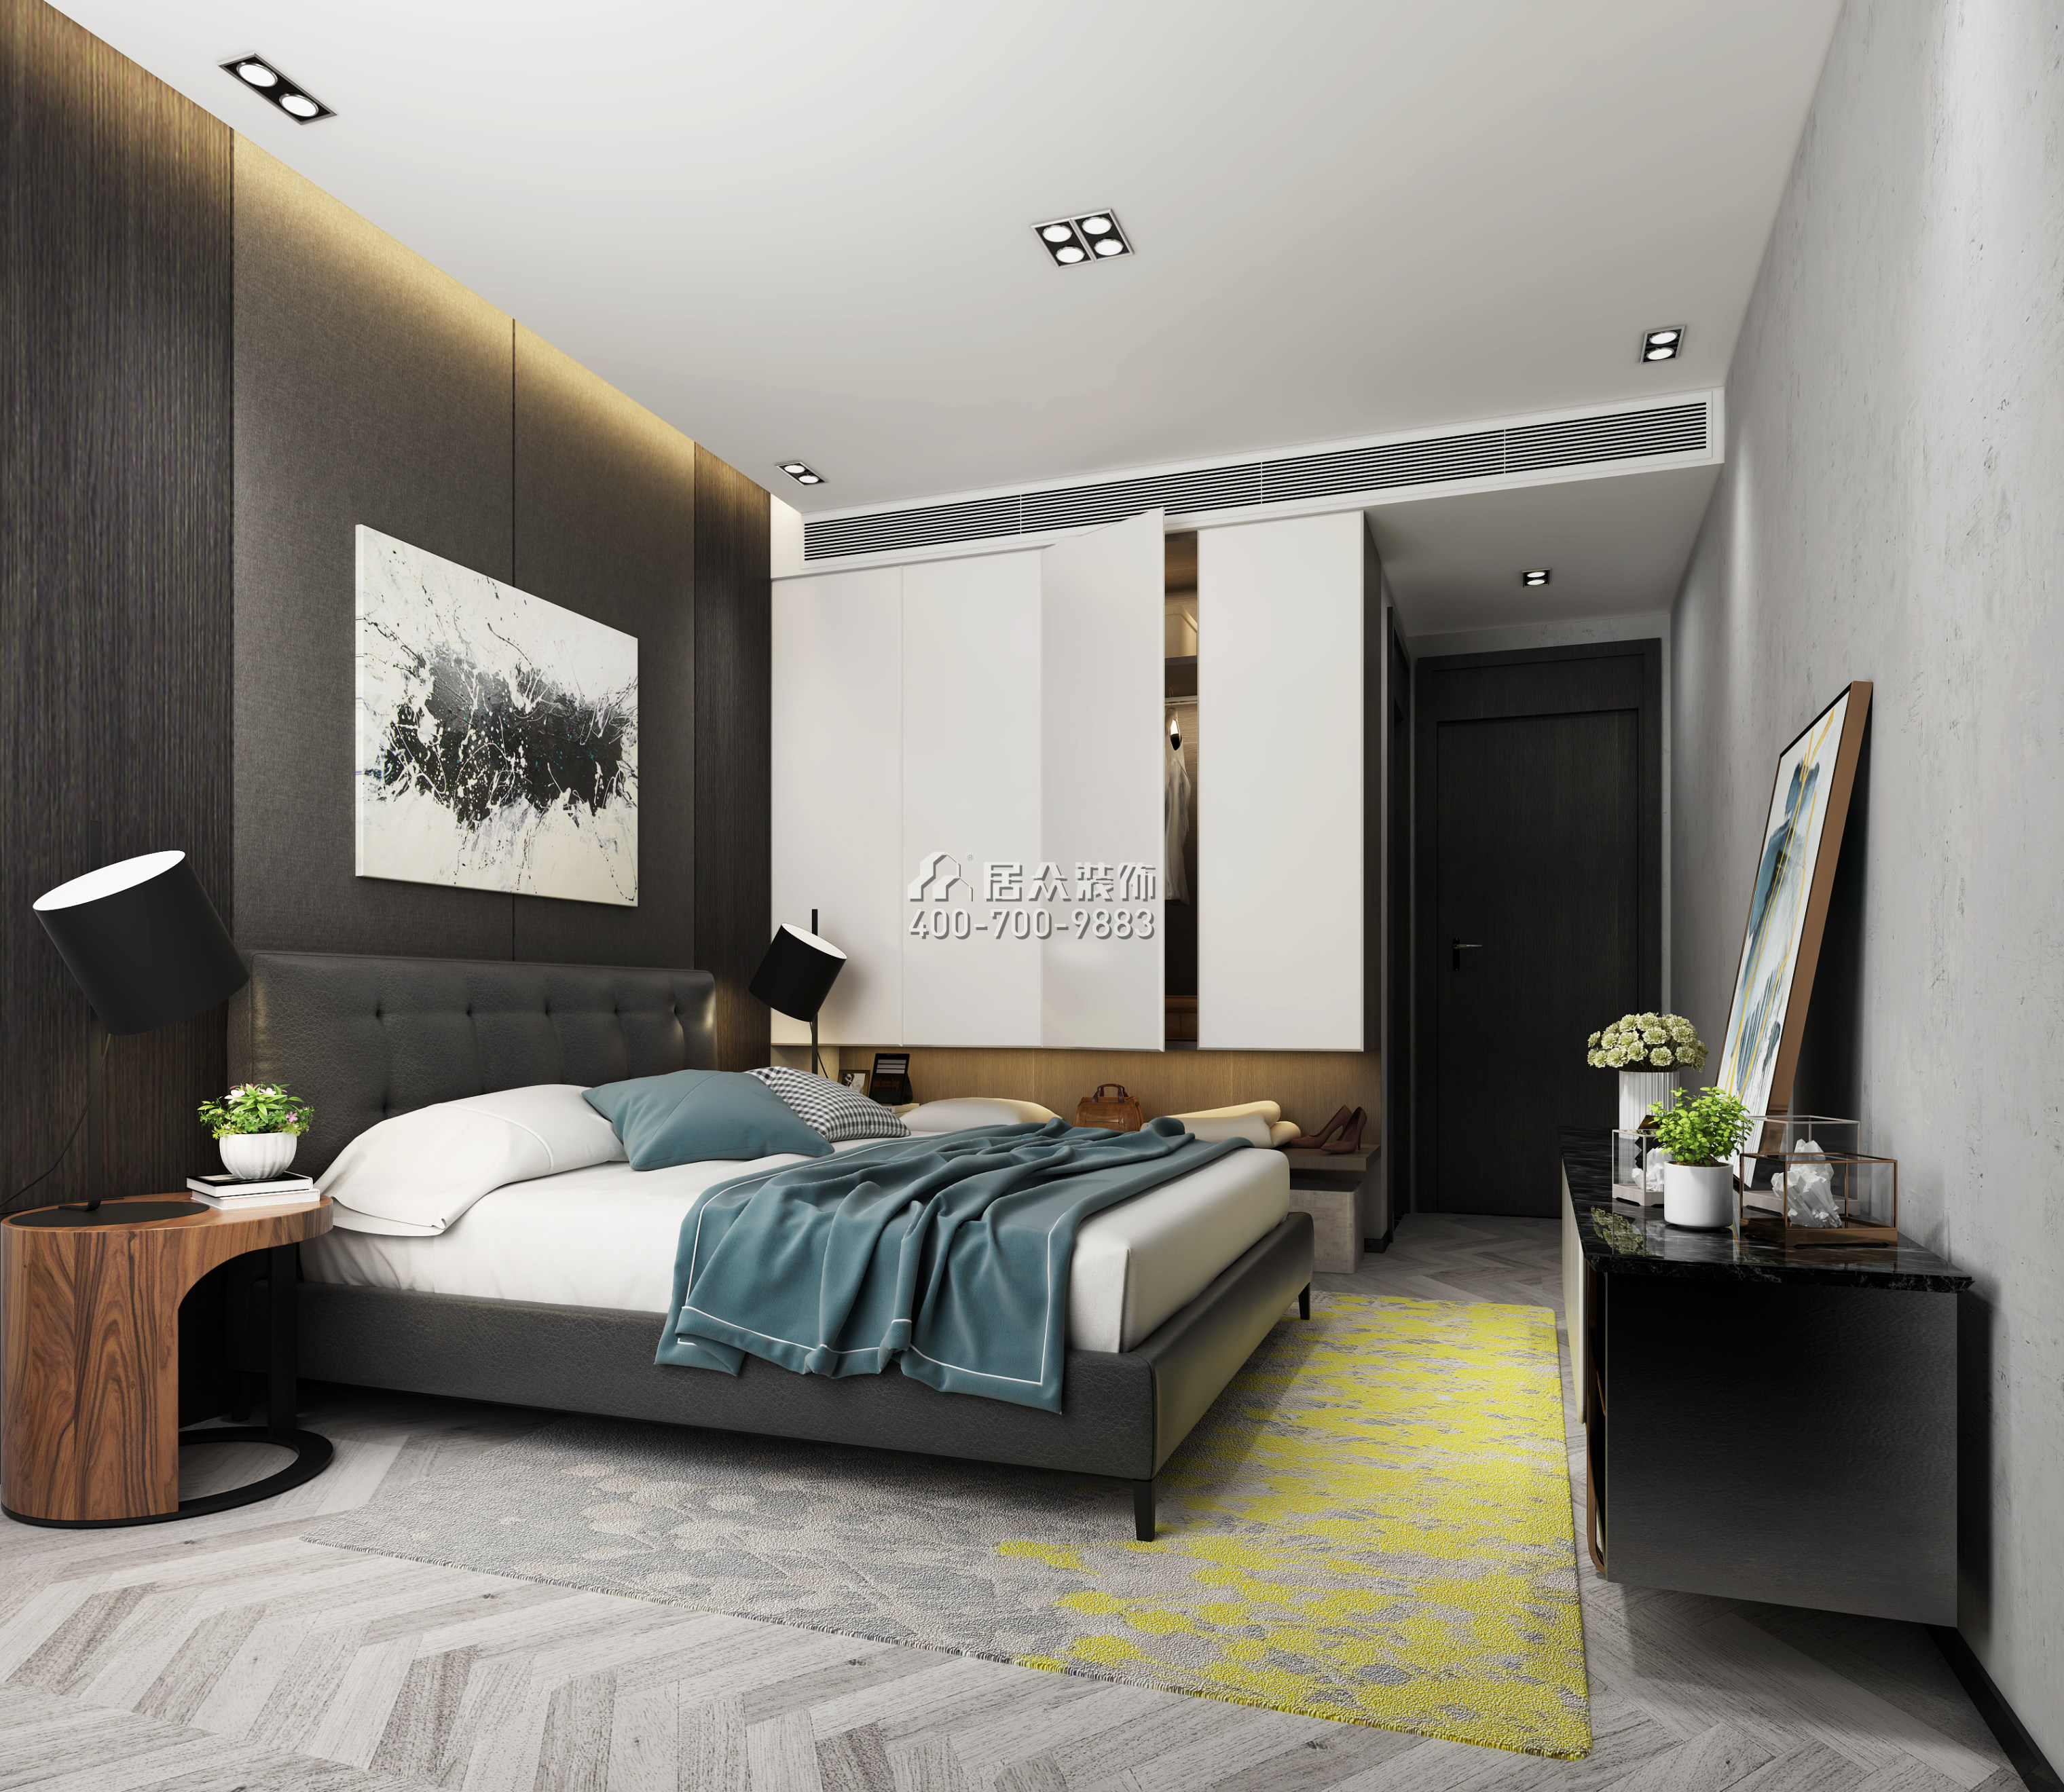 华发峰景湾120平方米现代简约风格平层户型卧室装修效果图